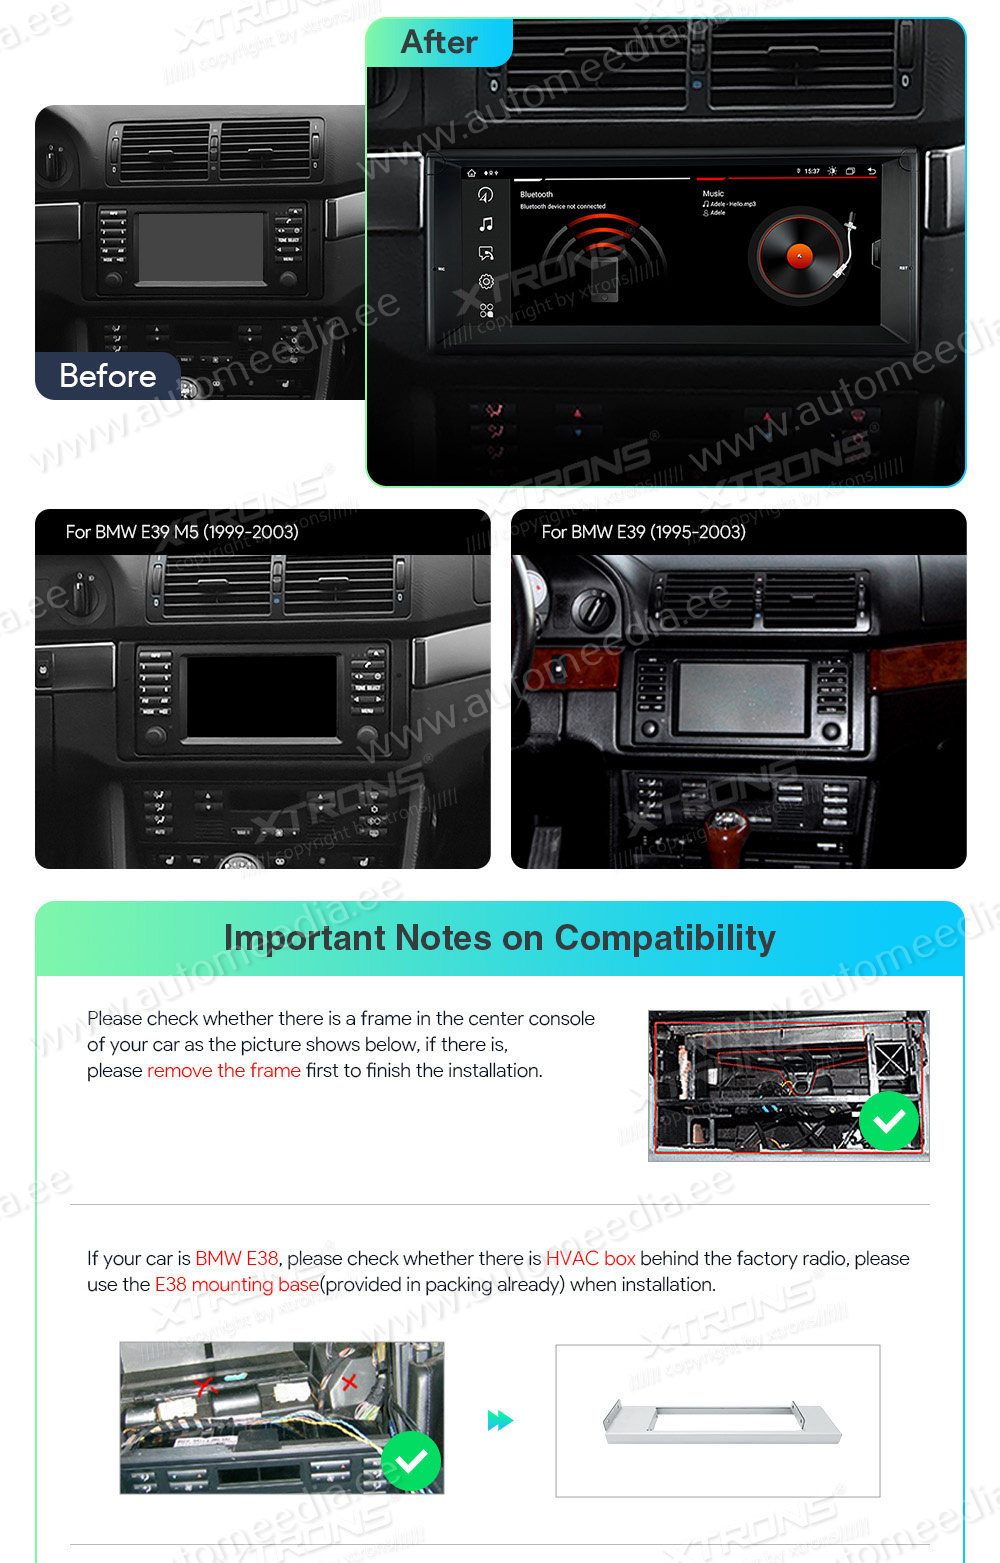 BMW 5. seeria E39 (1995-2004) | 7. seeria E38 (1994-2001)  совместимость мультимедийного радио в зависимости от модели автомобиля